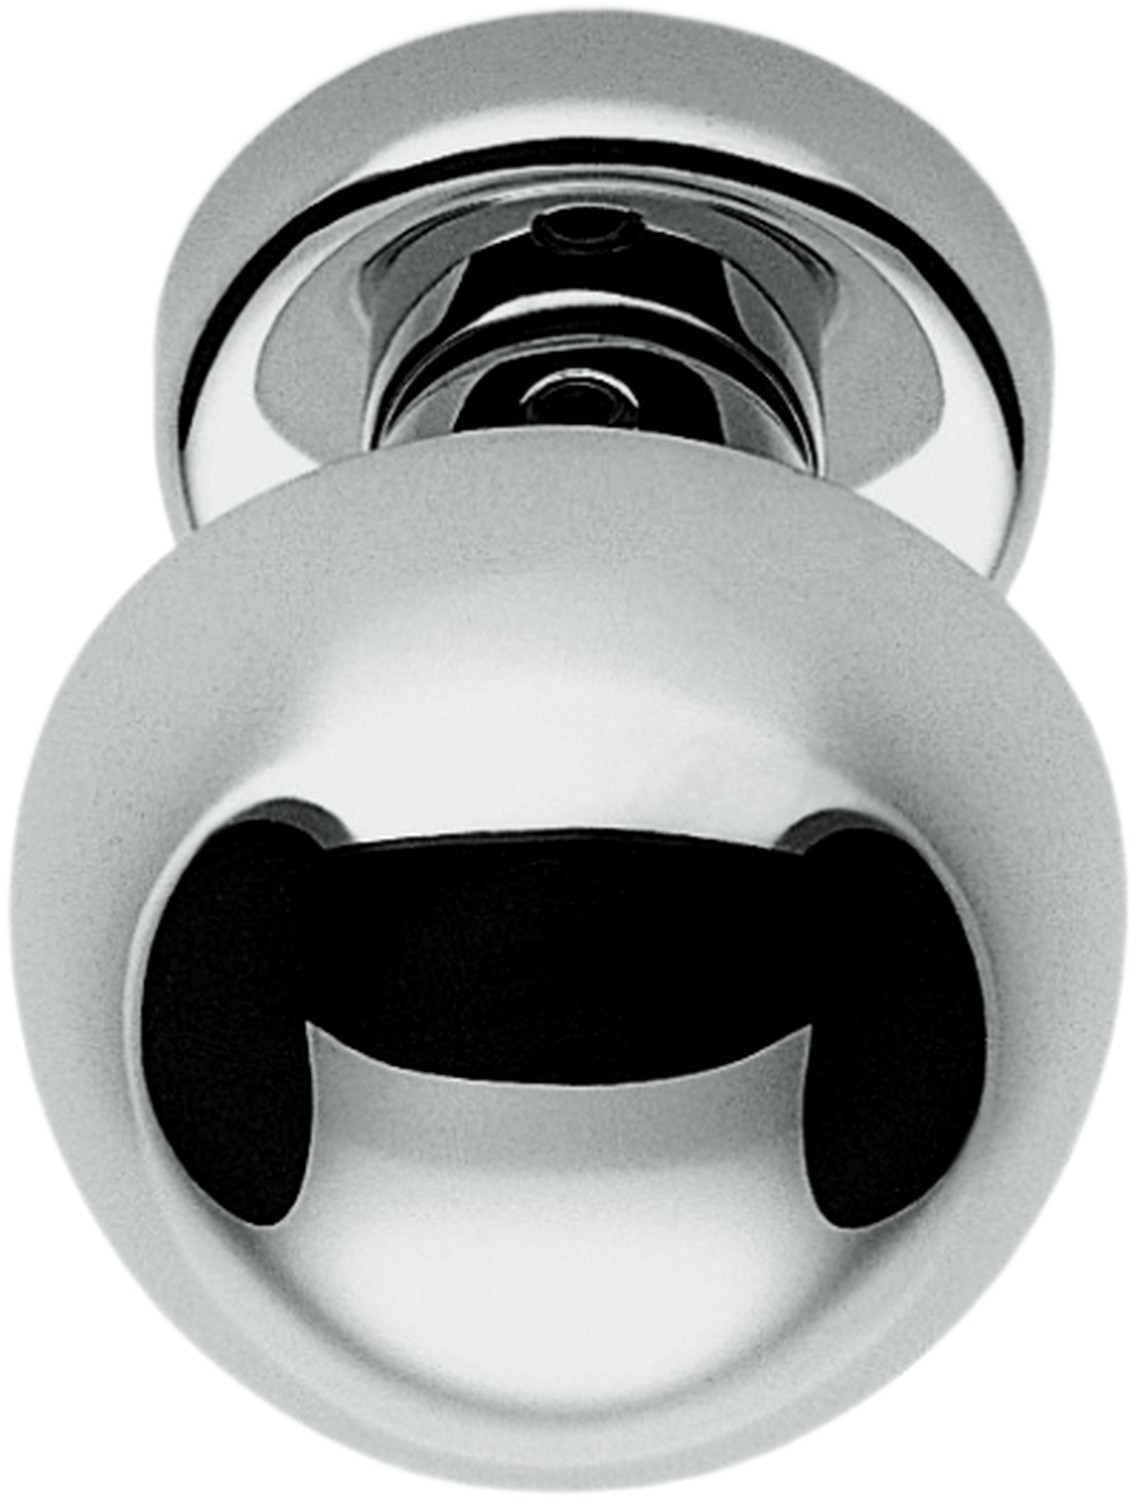 COLOMBO DESIGN -  Pomolo ROBOT tondo accoppiato con quadro rosette e bocchette tonde foro yale - col. NEROMAT - dim. Ø 55